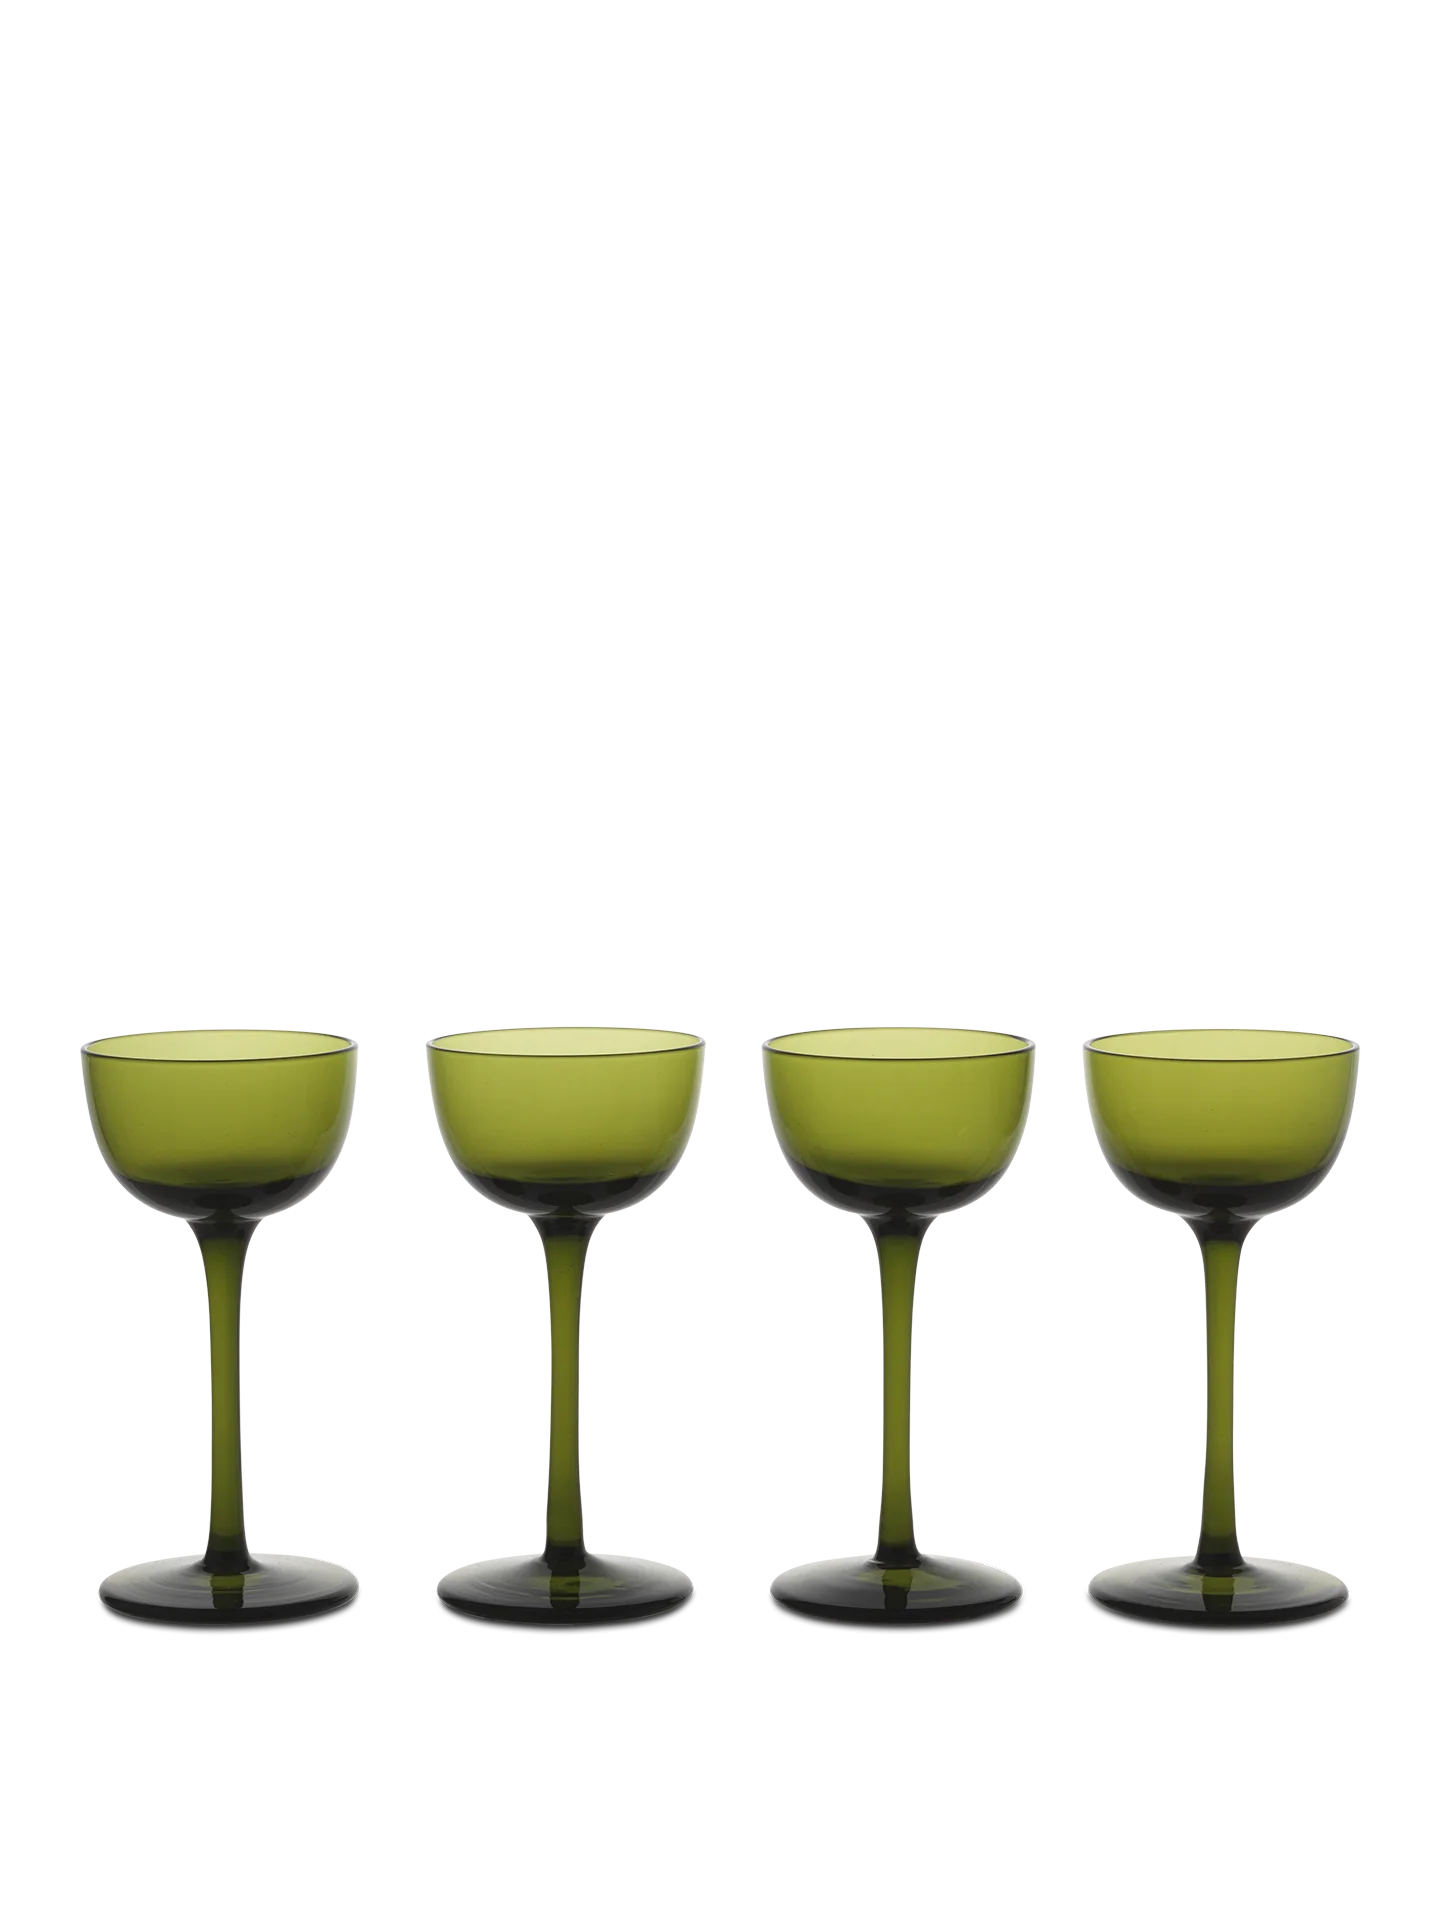 Host Liqueur Glasses - Set of 4 ver. Farben